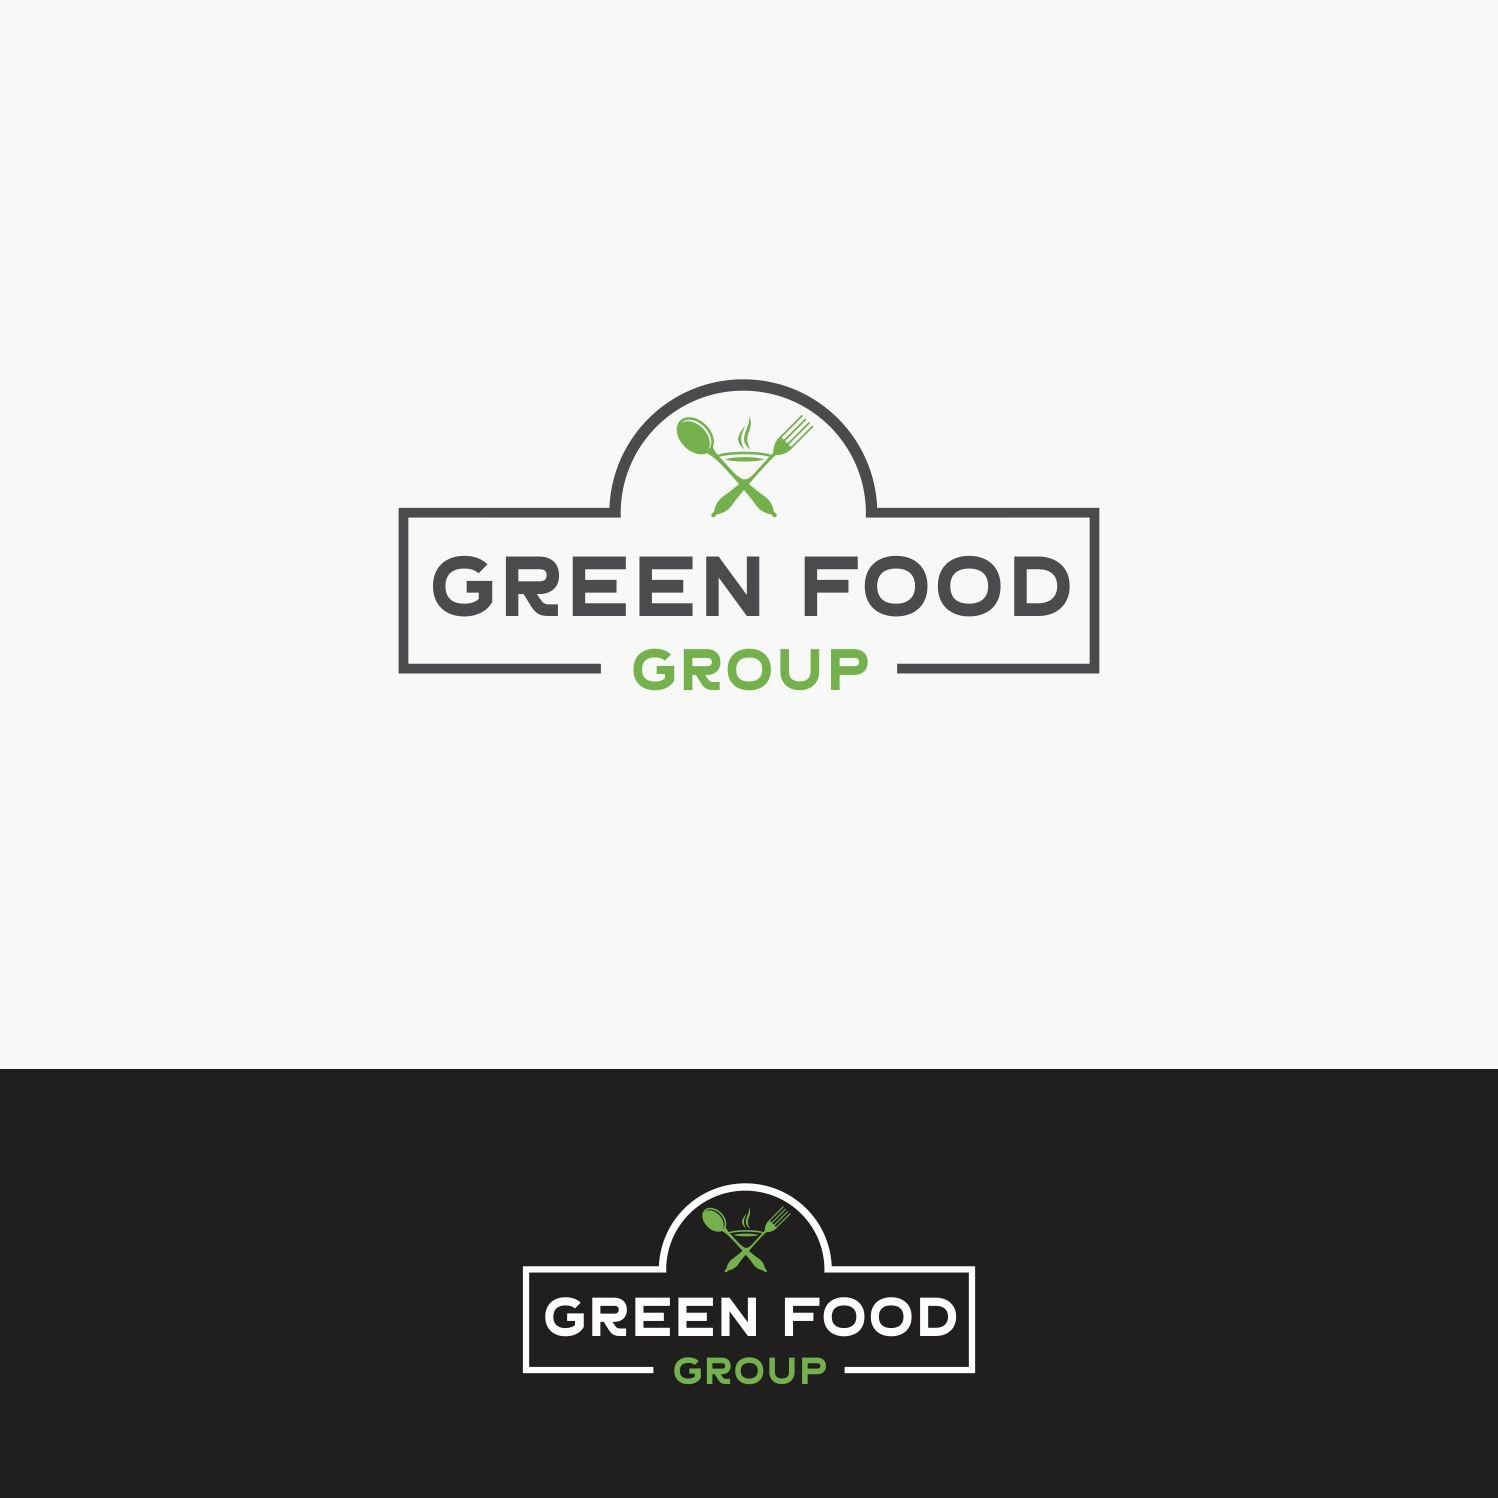 Green and White Restaurant Logo - Elegant, Playful, Restaurant Logo Design for Green Food Group (GFG ...